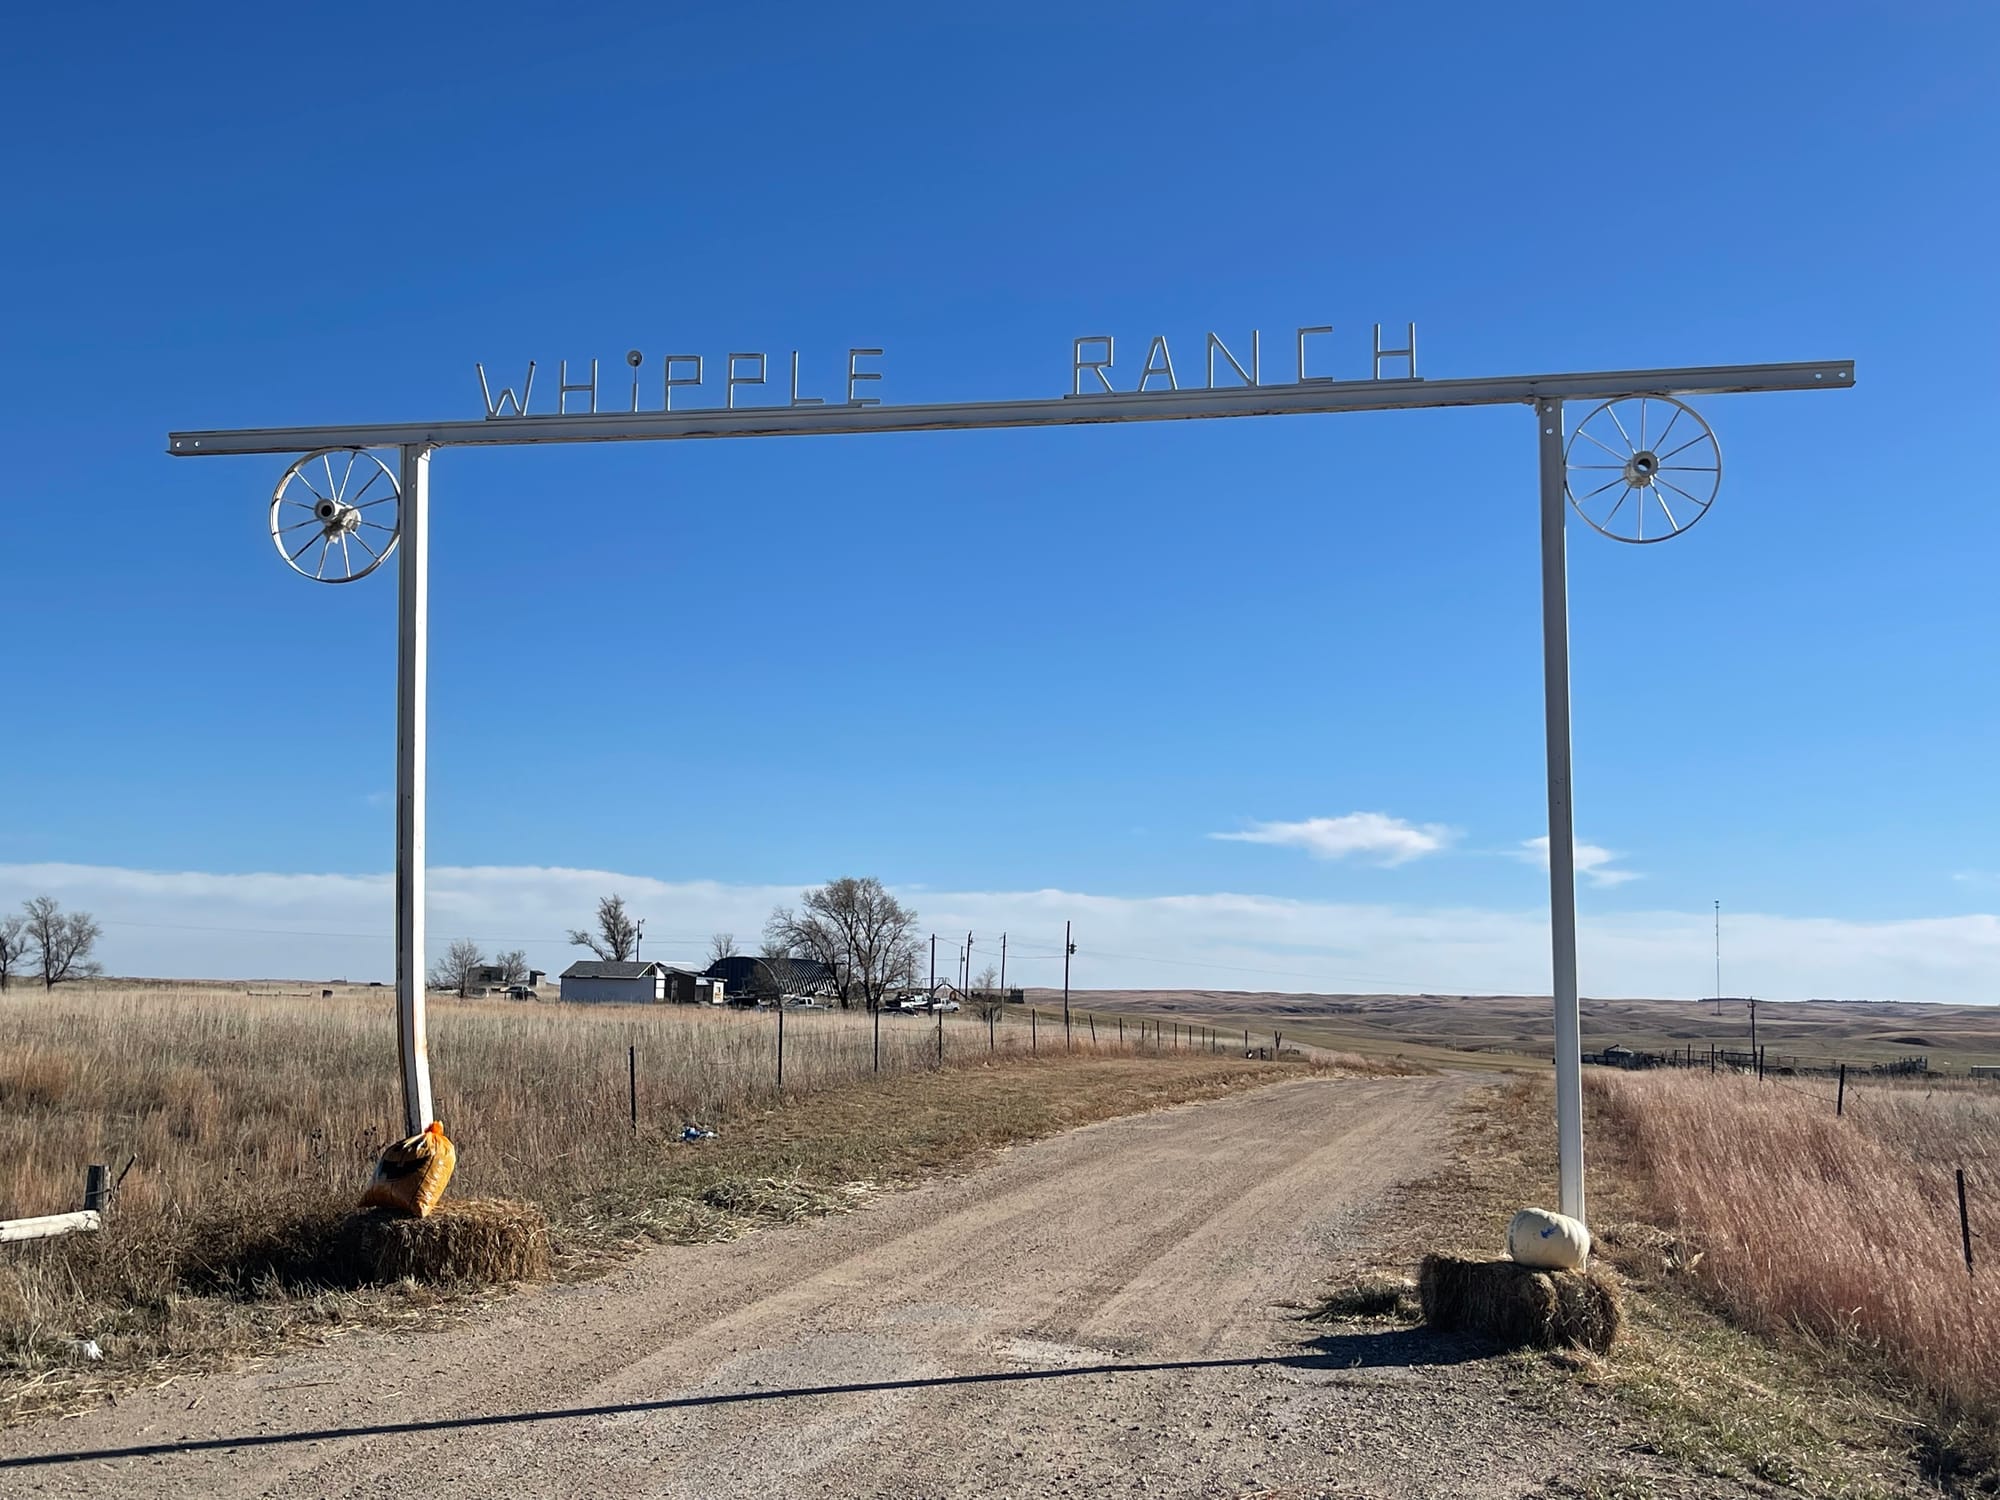 The Whipple Ranch in Two Step, South Dakota near Rosebud.